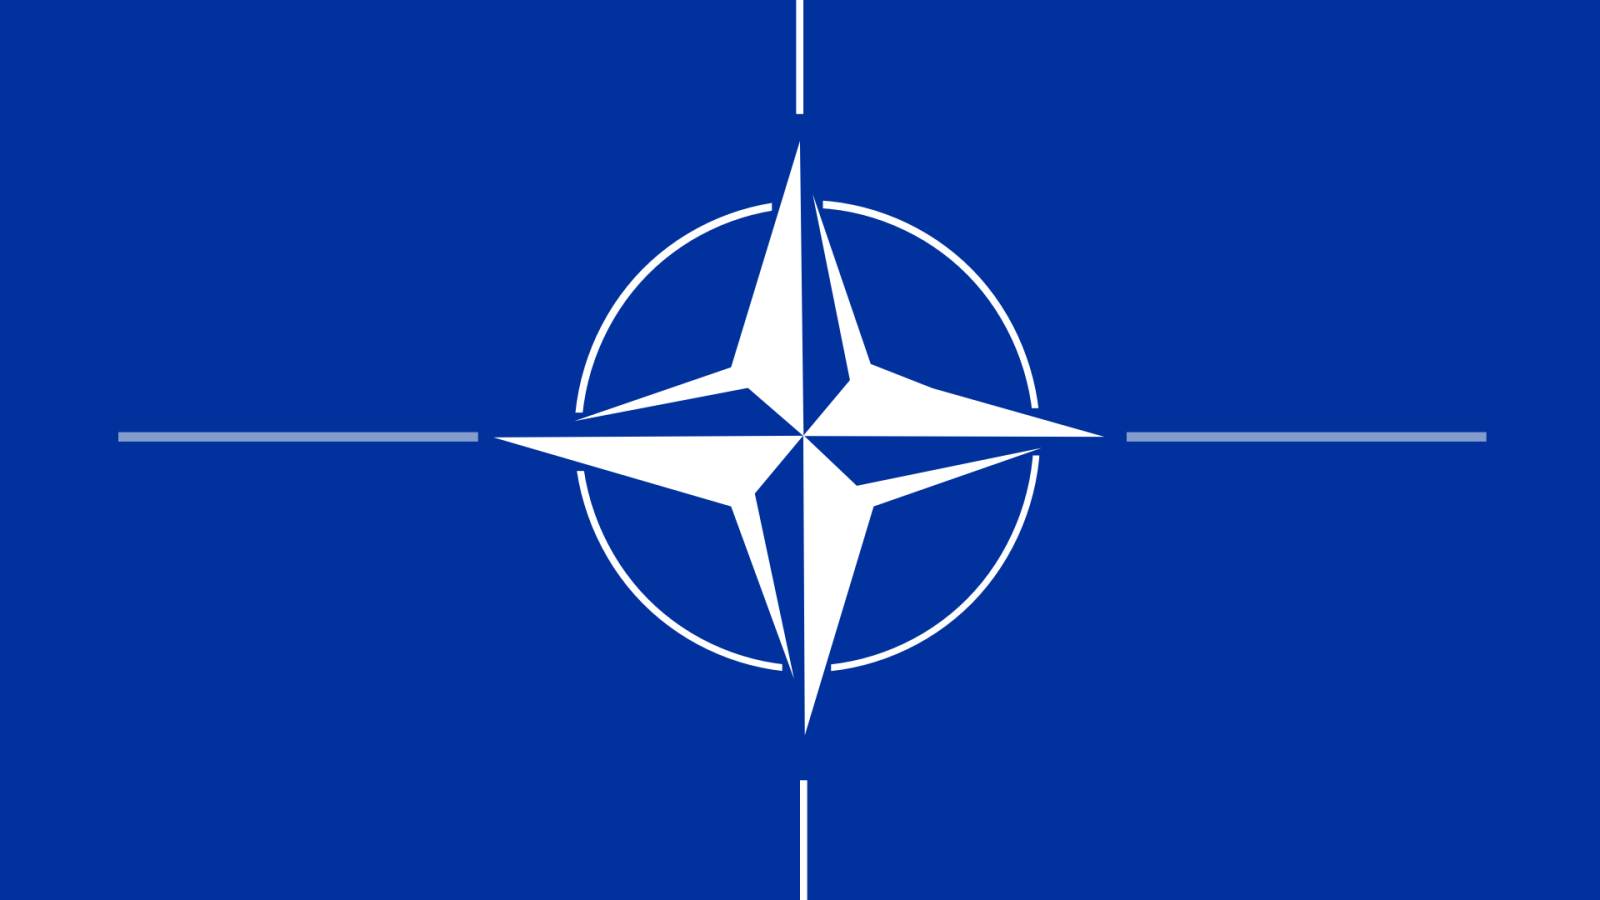 La NATO non annuncia alcun piano per trasferire armi nucleari alla Polonia